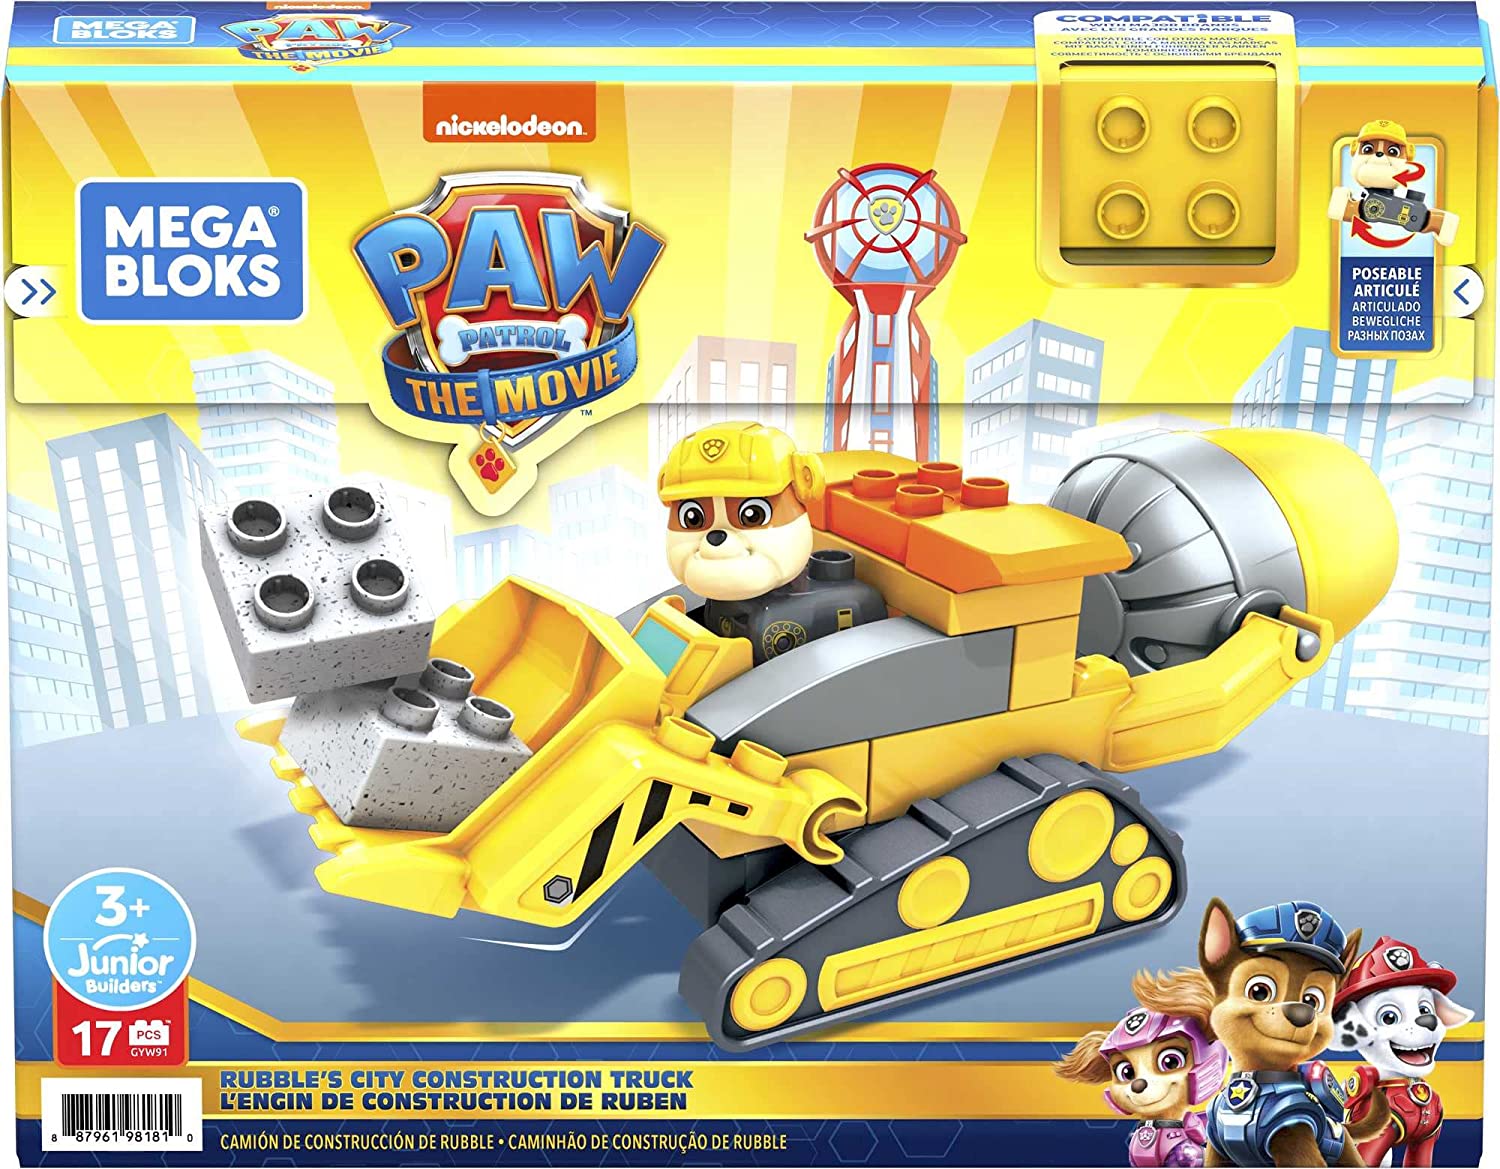 Los 3 mejores juguetes de la Patrulla Canina (PAW Patrol)  Paw patrol  birthday party, Paw patrol party, Paw patrol gifts